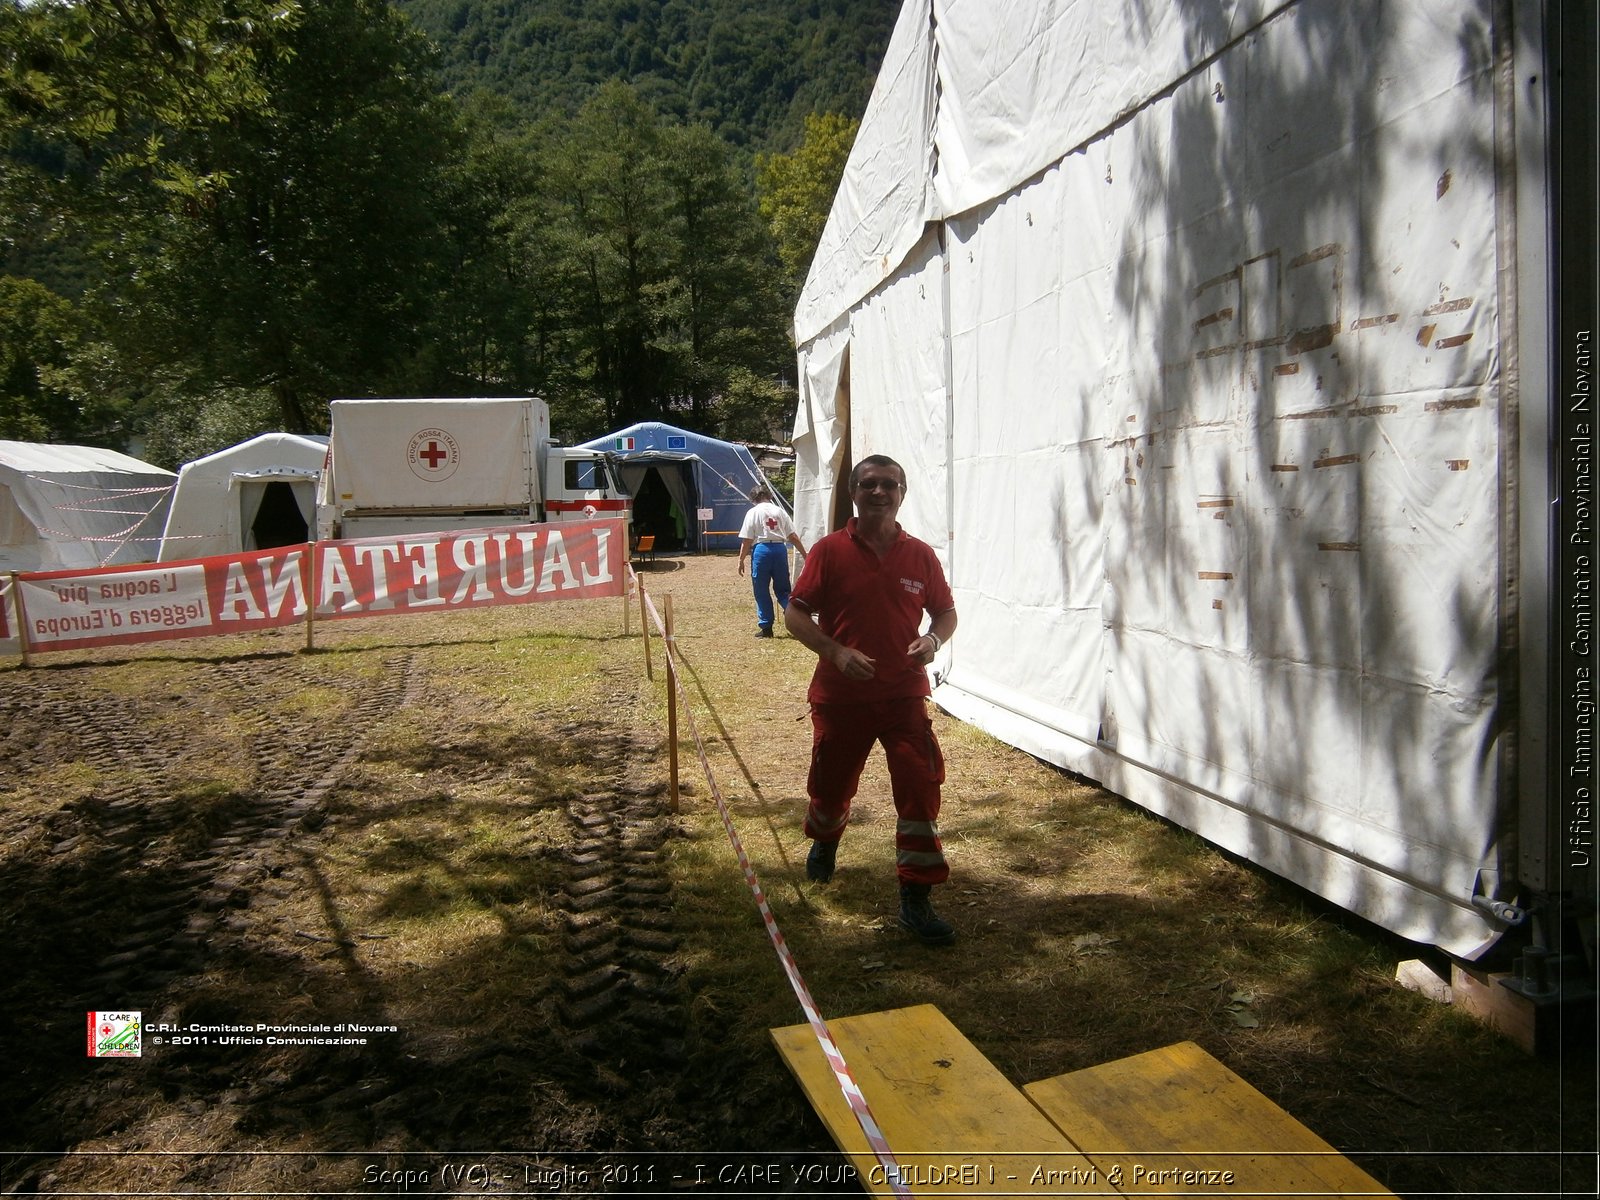 Scopa (VC) - Luglio 2011 - I CARE YOUR CHILDREN - Arrivi & Partenze -  Croce Rossa Italiana - Ufficio Immagine Comitato Provinciale Novara